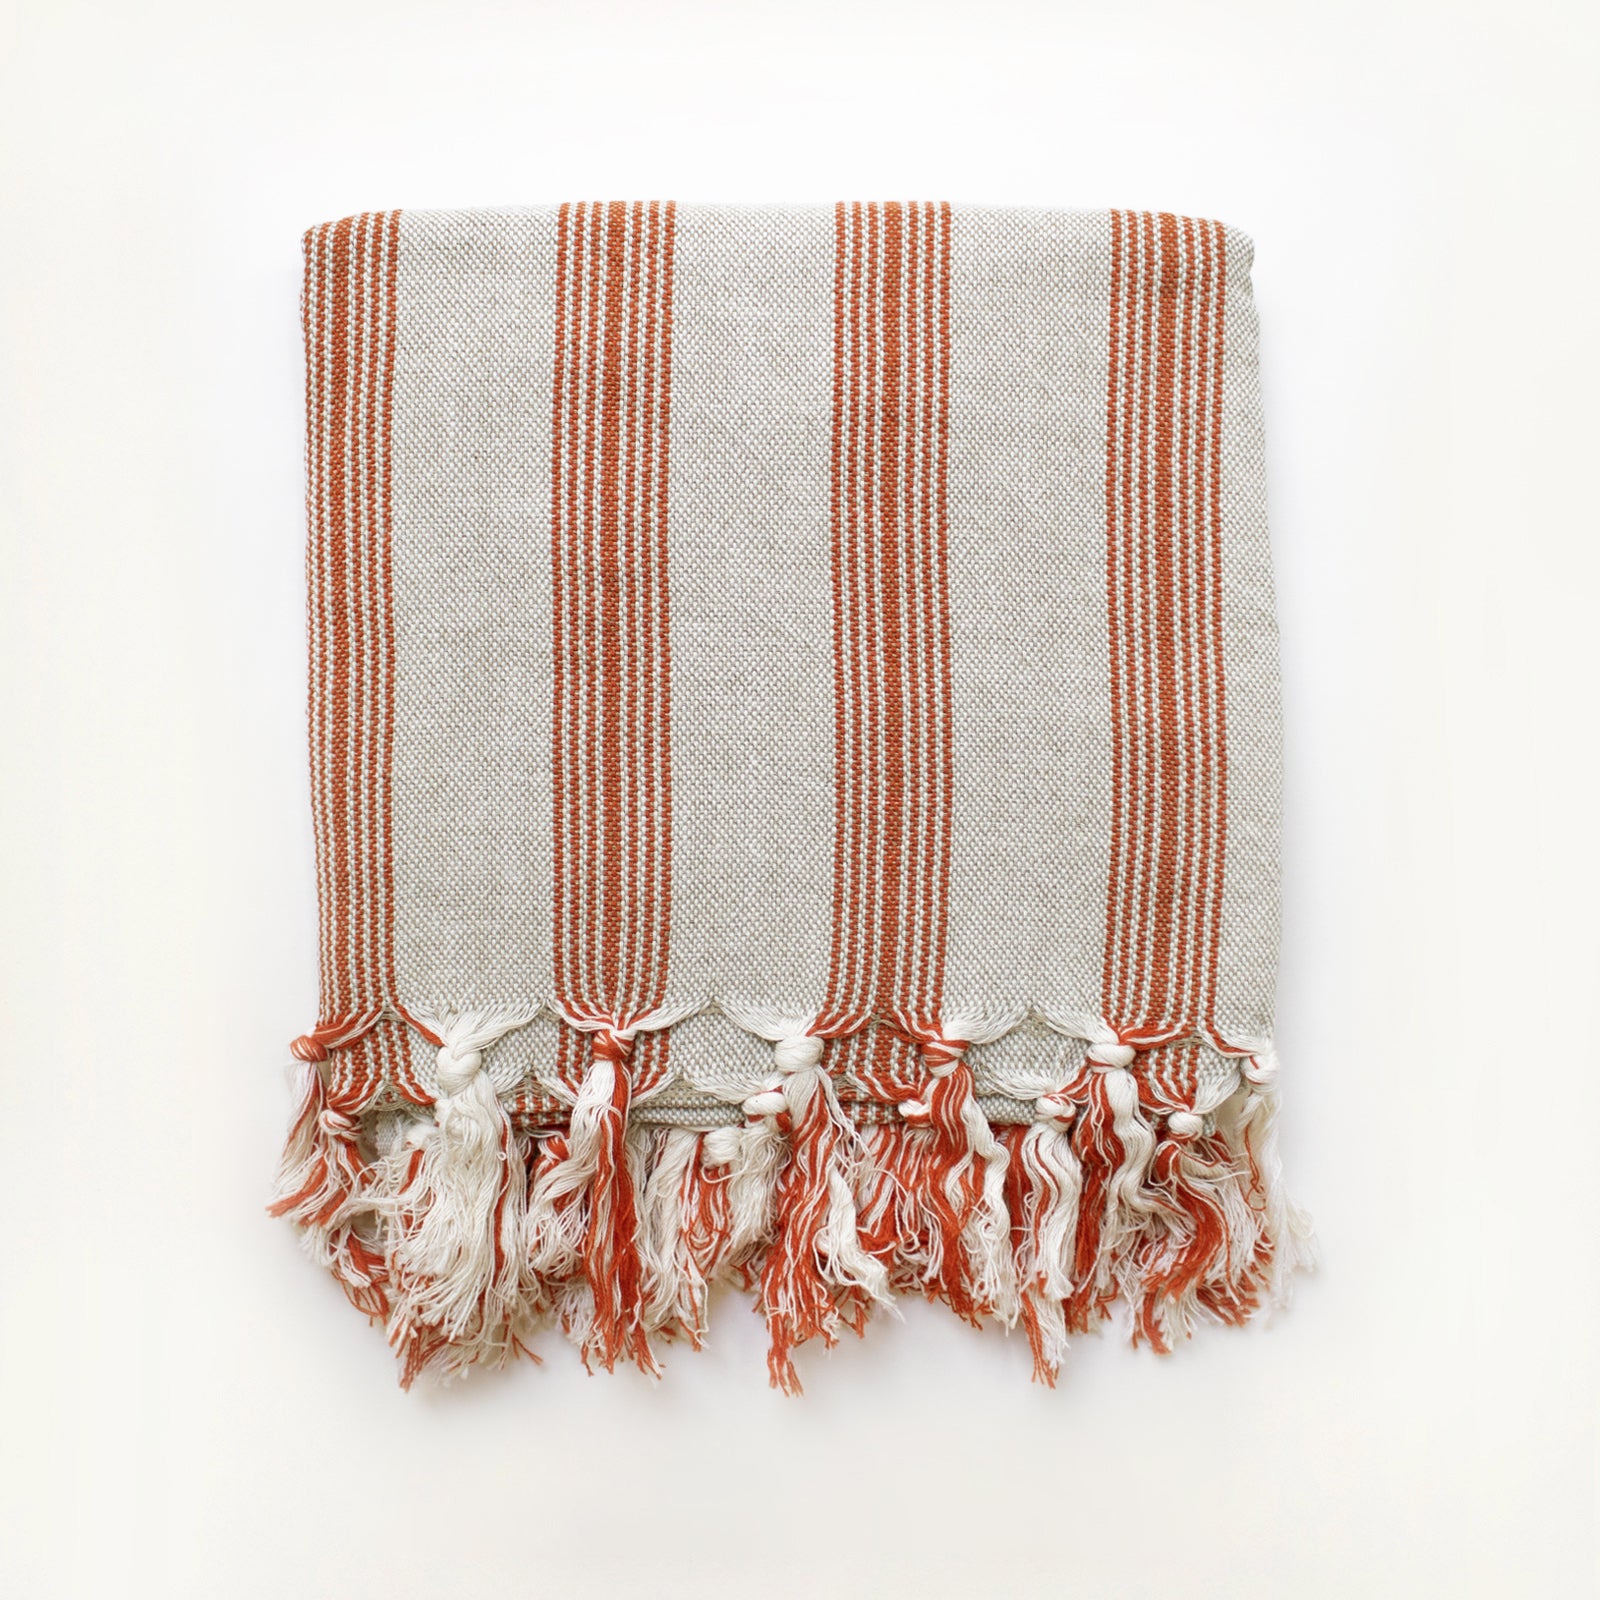 Asli Handwoven Turkish Towel